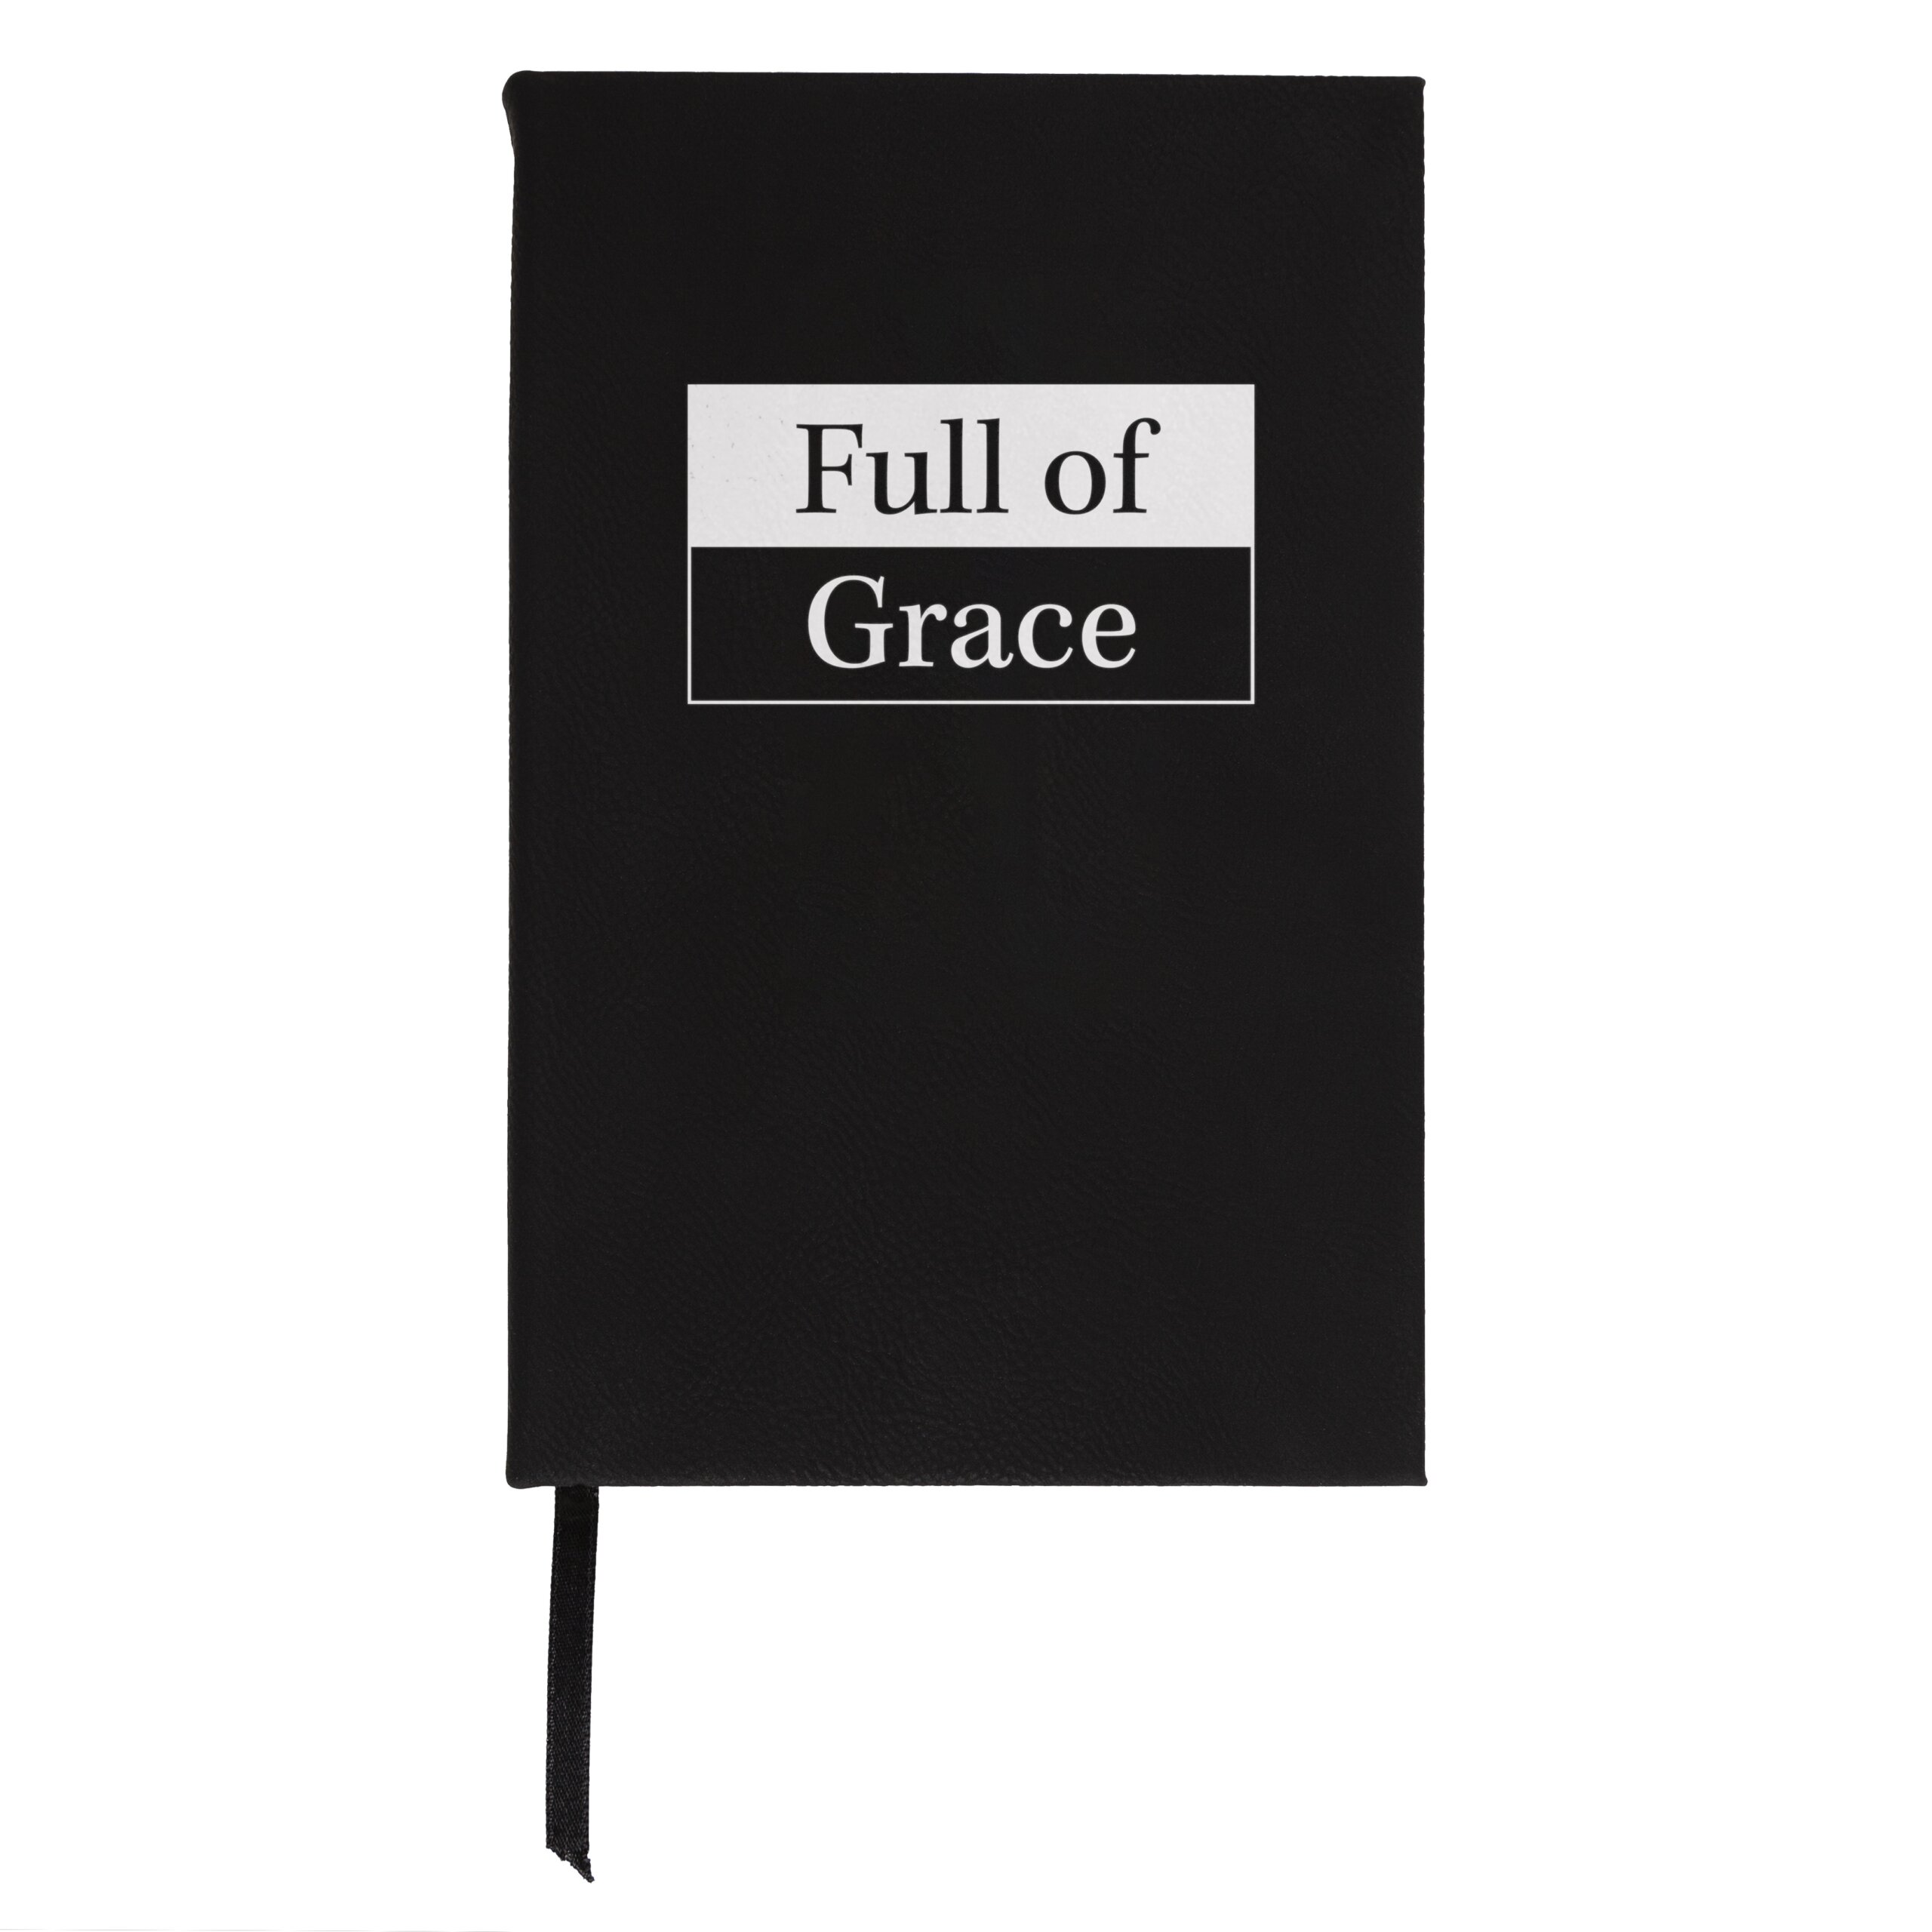 Full of Grace Good Catholic Journal